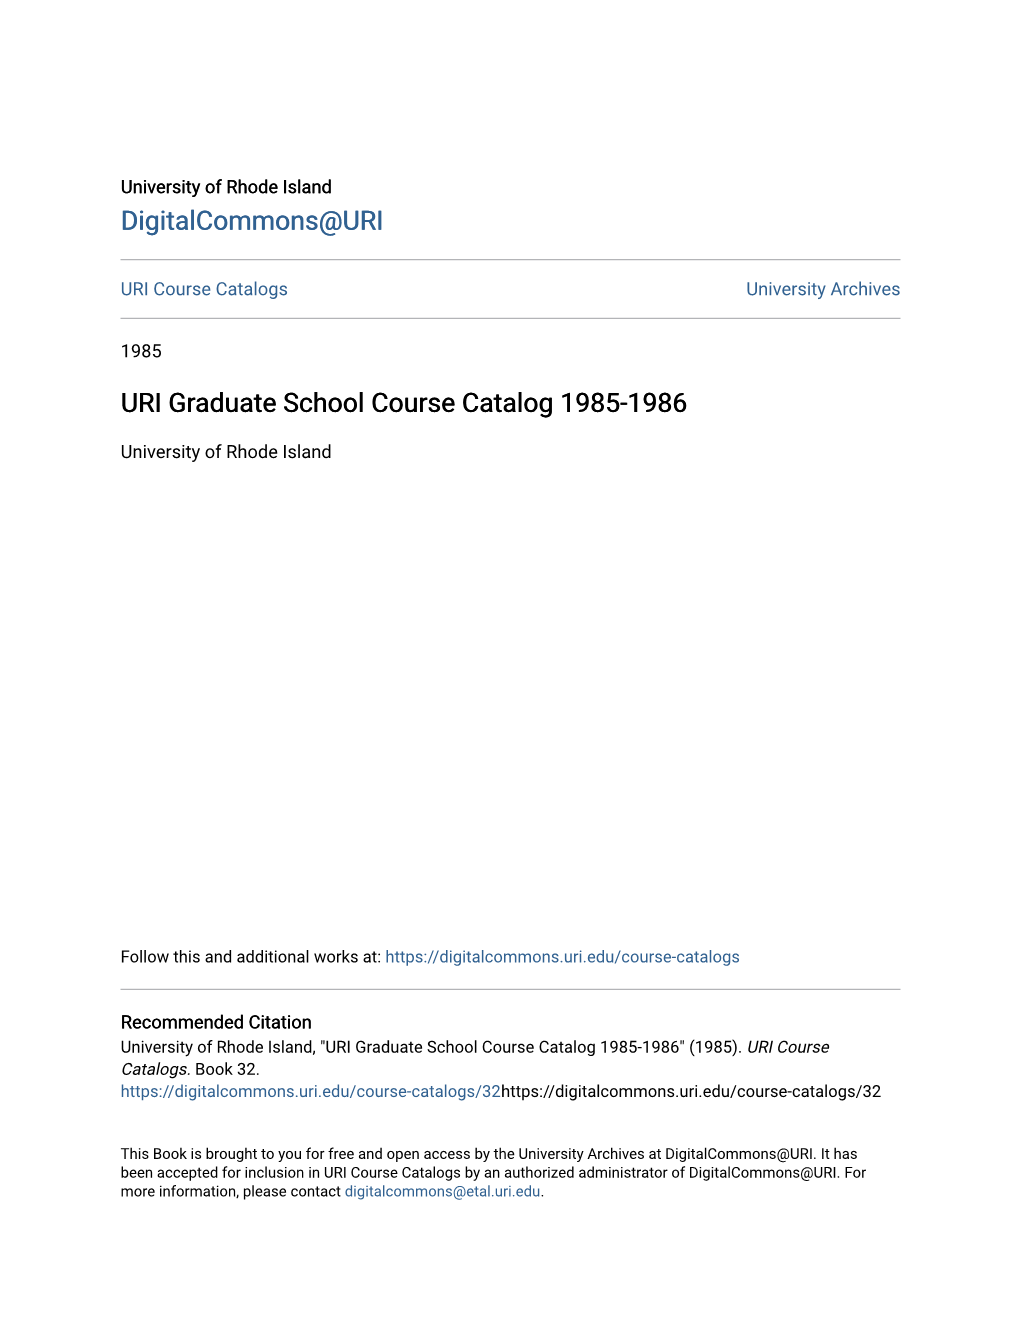 URI Graduate School Course Catalog 1985-1986